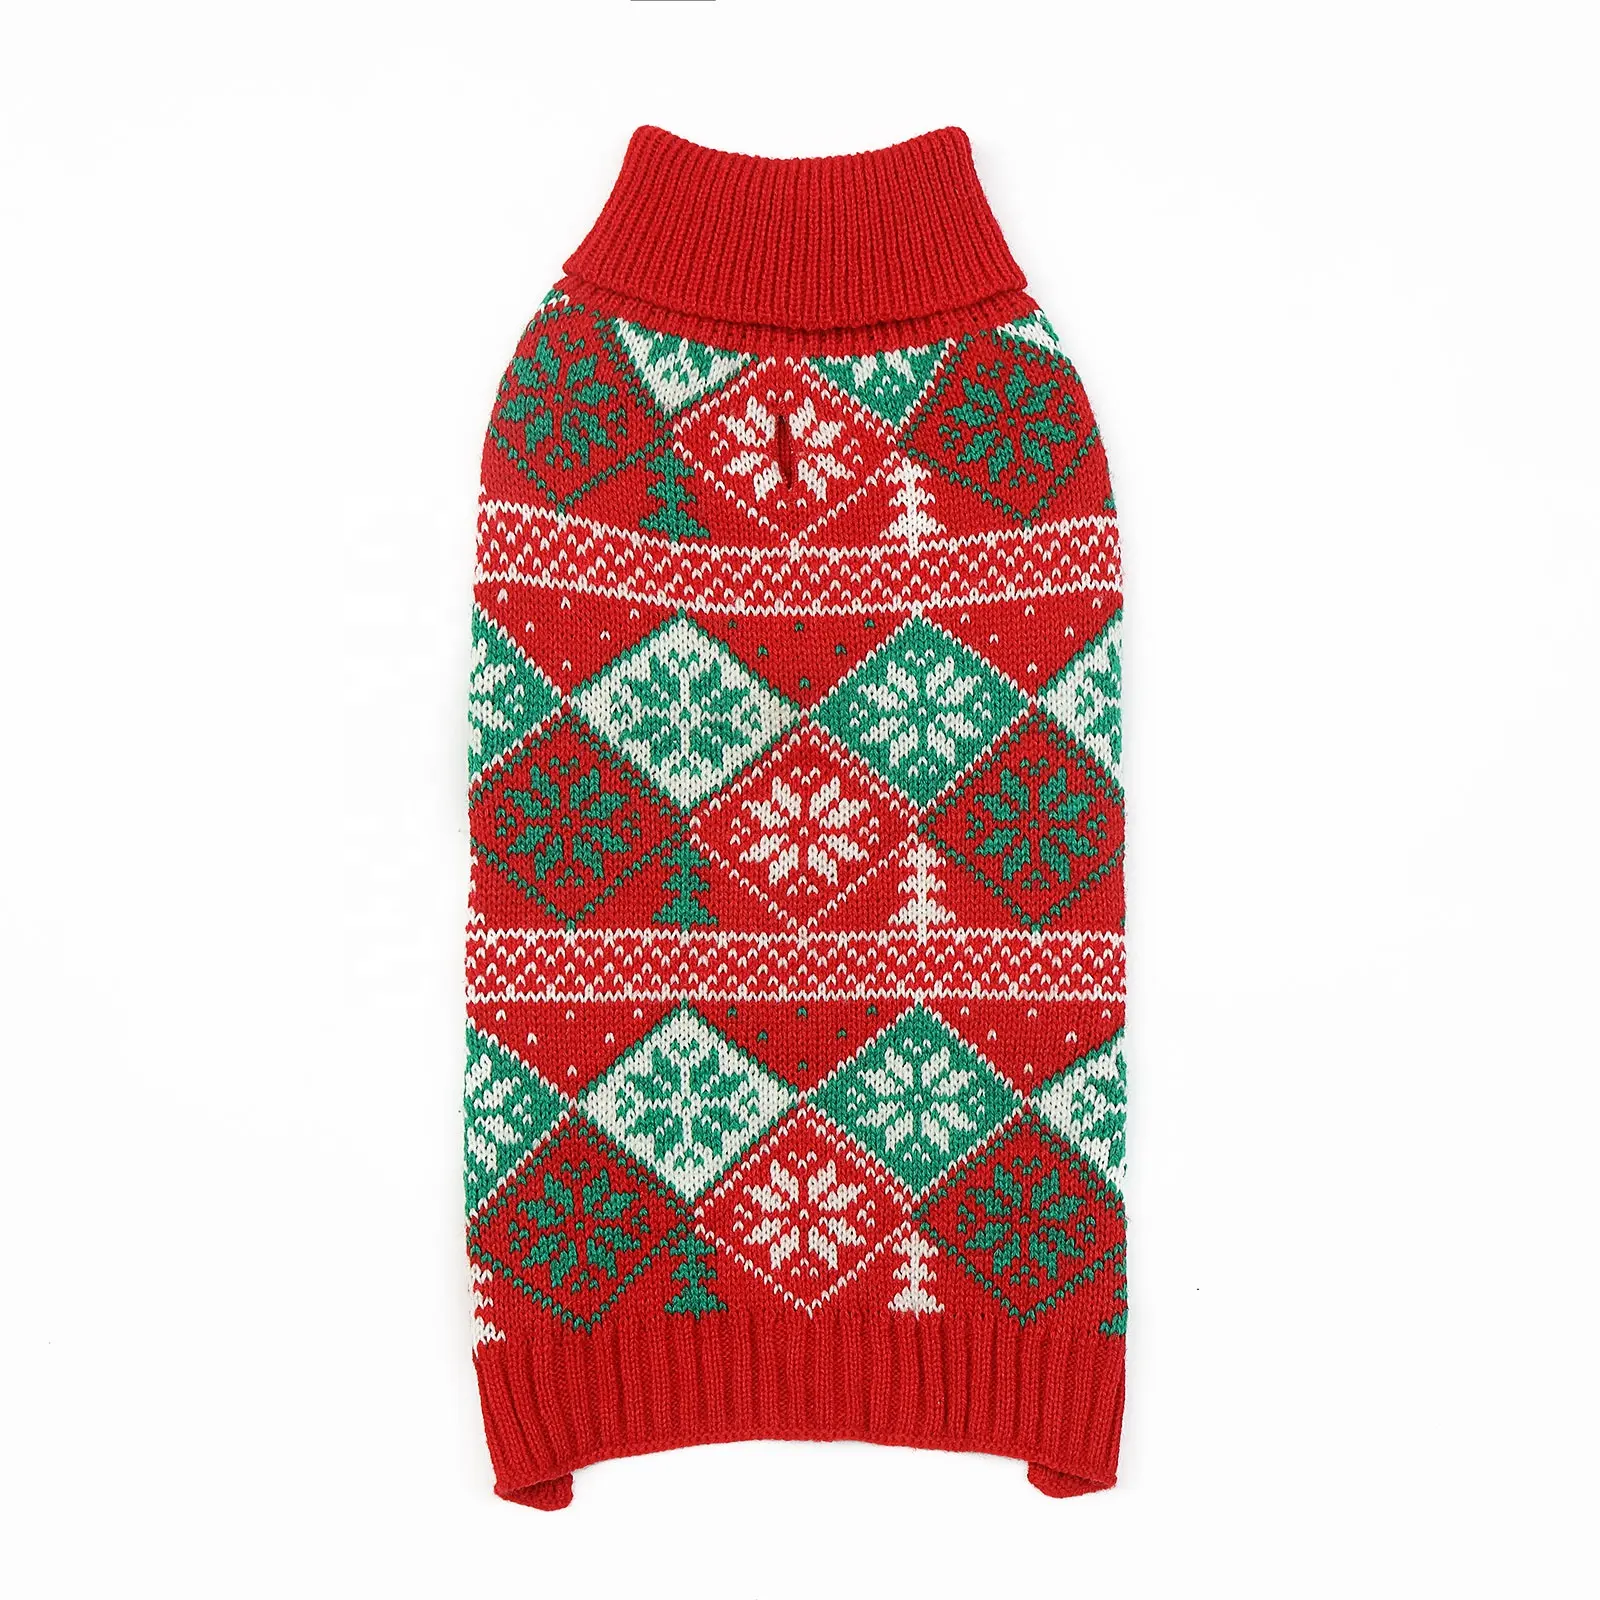 Rosso stile natalizio classico cane lavorato a maglia dolcevita maglieria maglioni stampa moda confortevole cucciolo traspirante morbido vestiti caldi